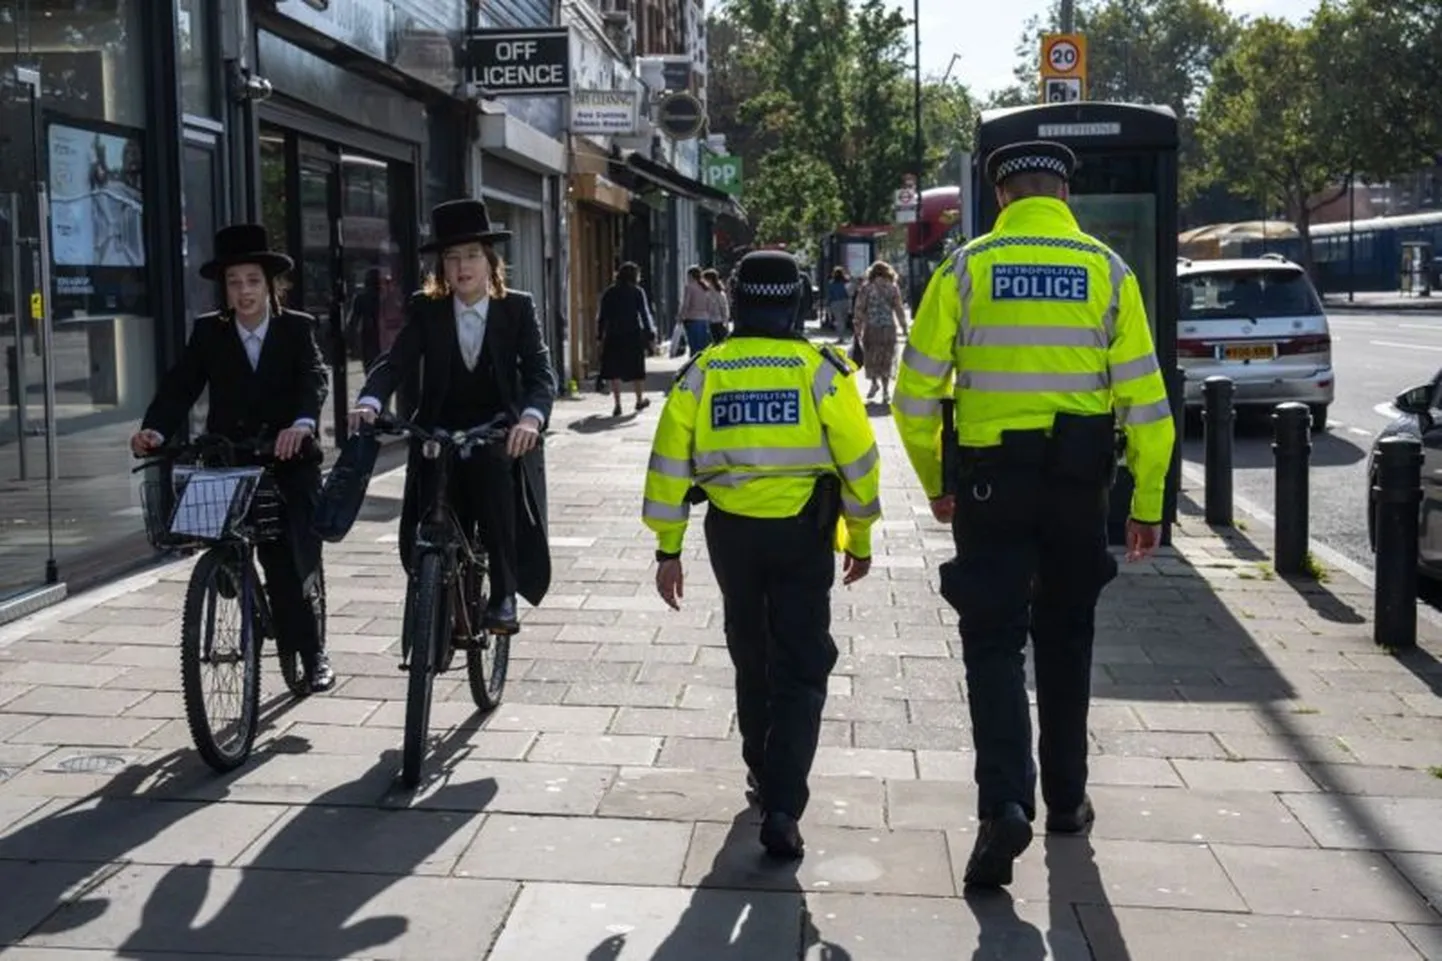 В связи с ростом антисемитизма в Лондоне усилено патрулирование районов, где нападения наиболее вероятны